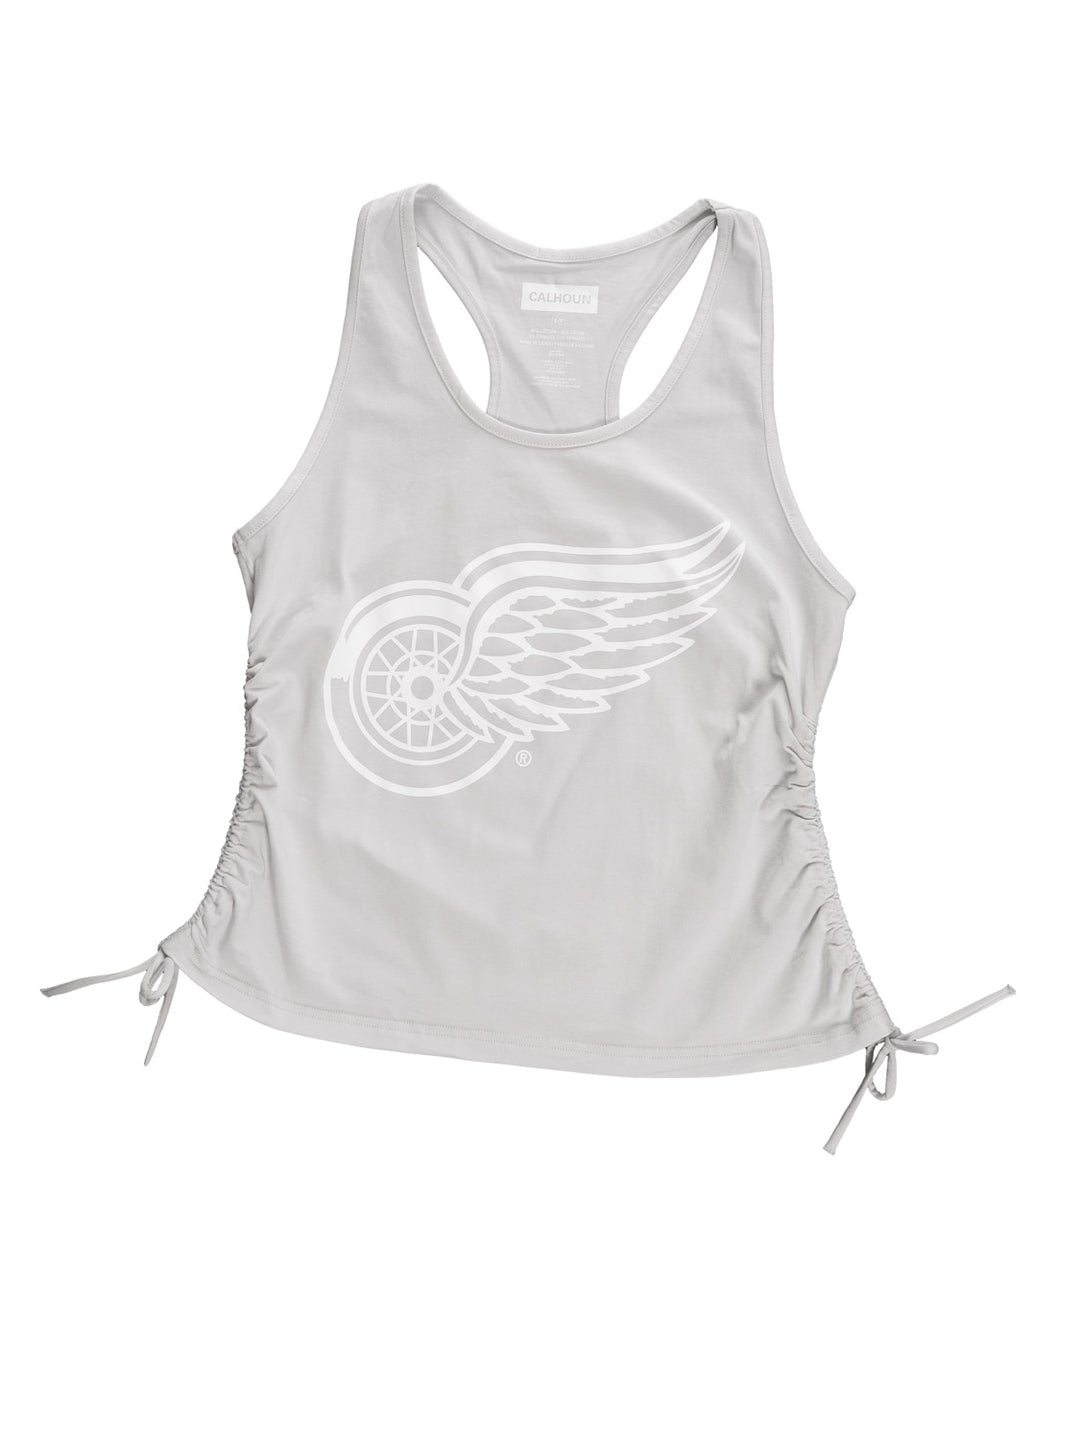 Detroit Red Wings Women's Adjustable Jersey Knit Tank Top